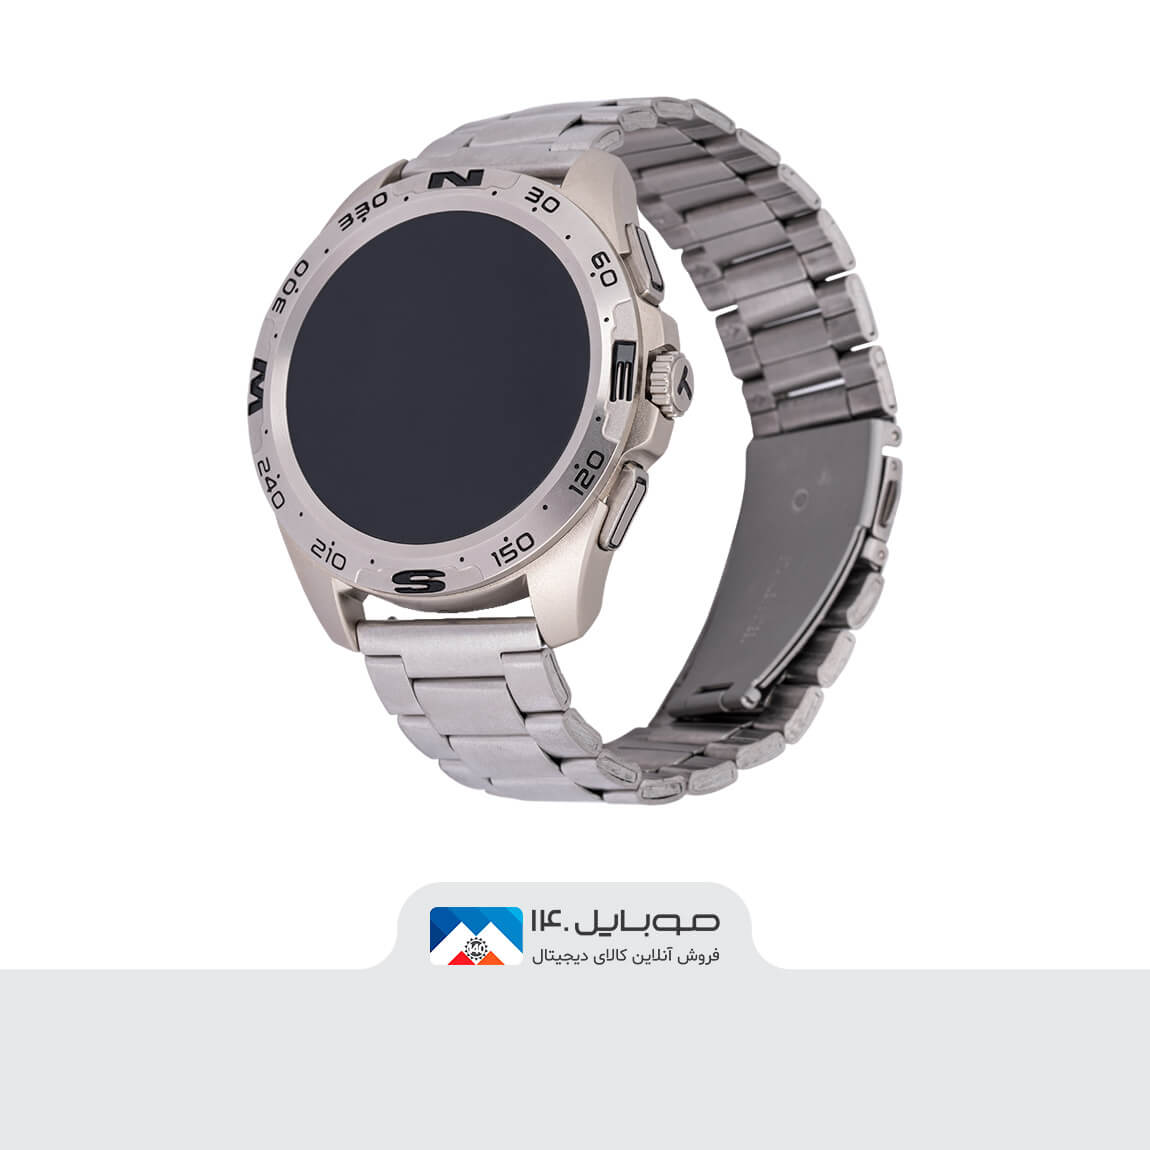 Hainoteko RW-23 Smart Watch 4